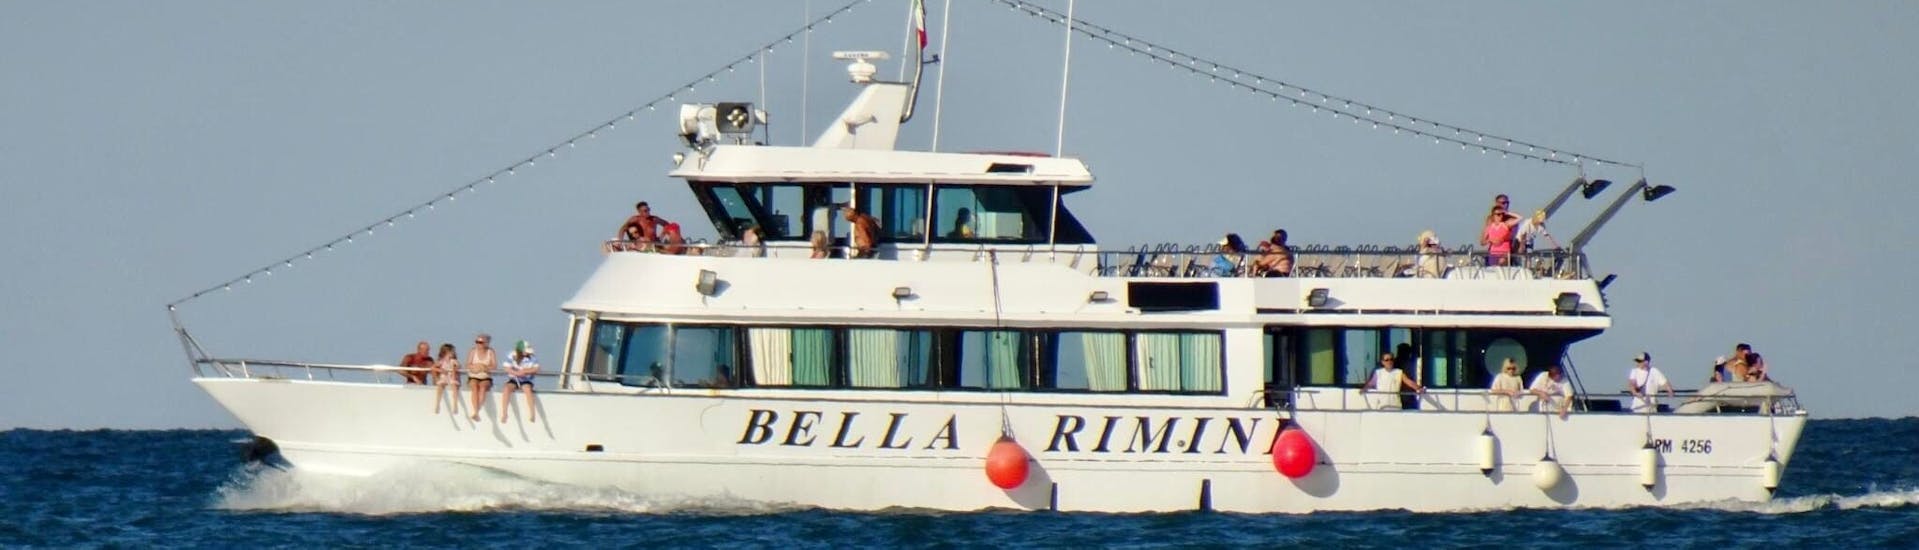 La barca Bella Rimini durante la Gita in barca al Golfo di Orosei e alla Grotta del Fico con soste per nuotare con Sardinia Natural Park Tours.